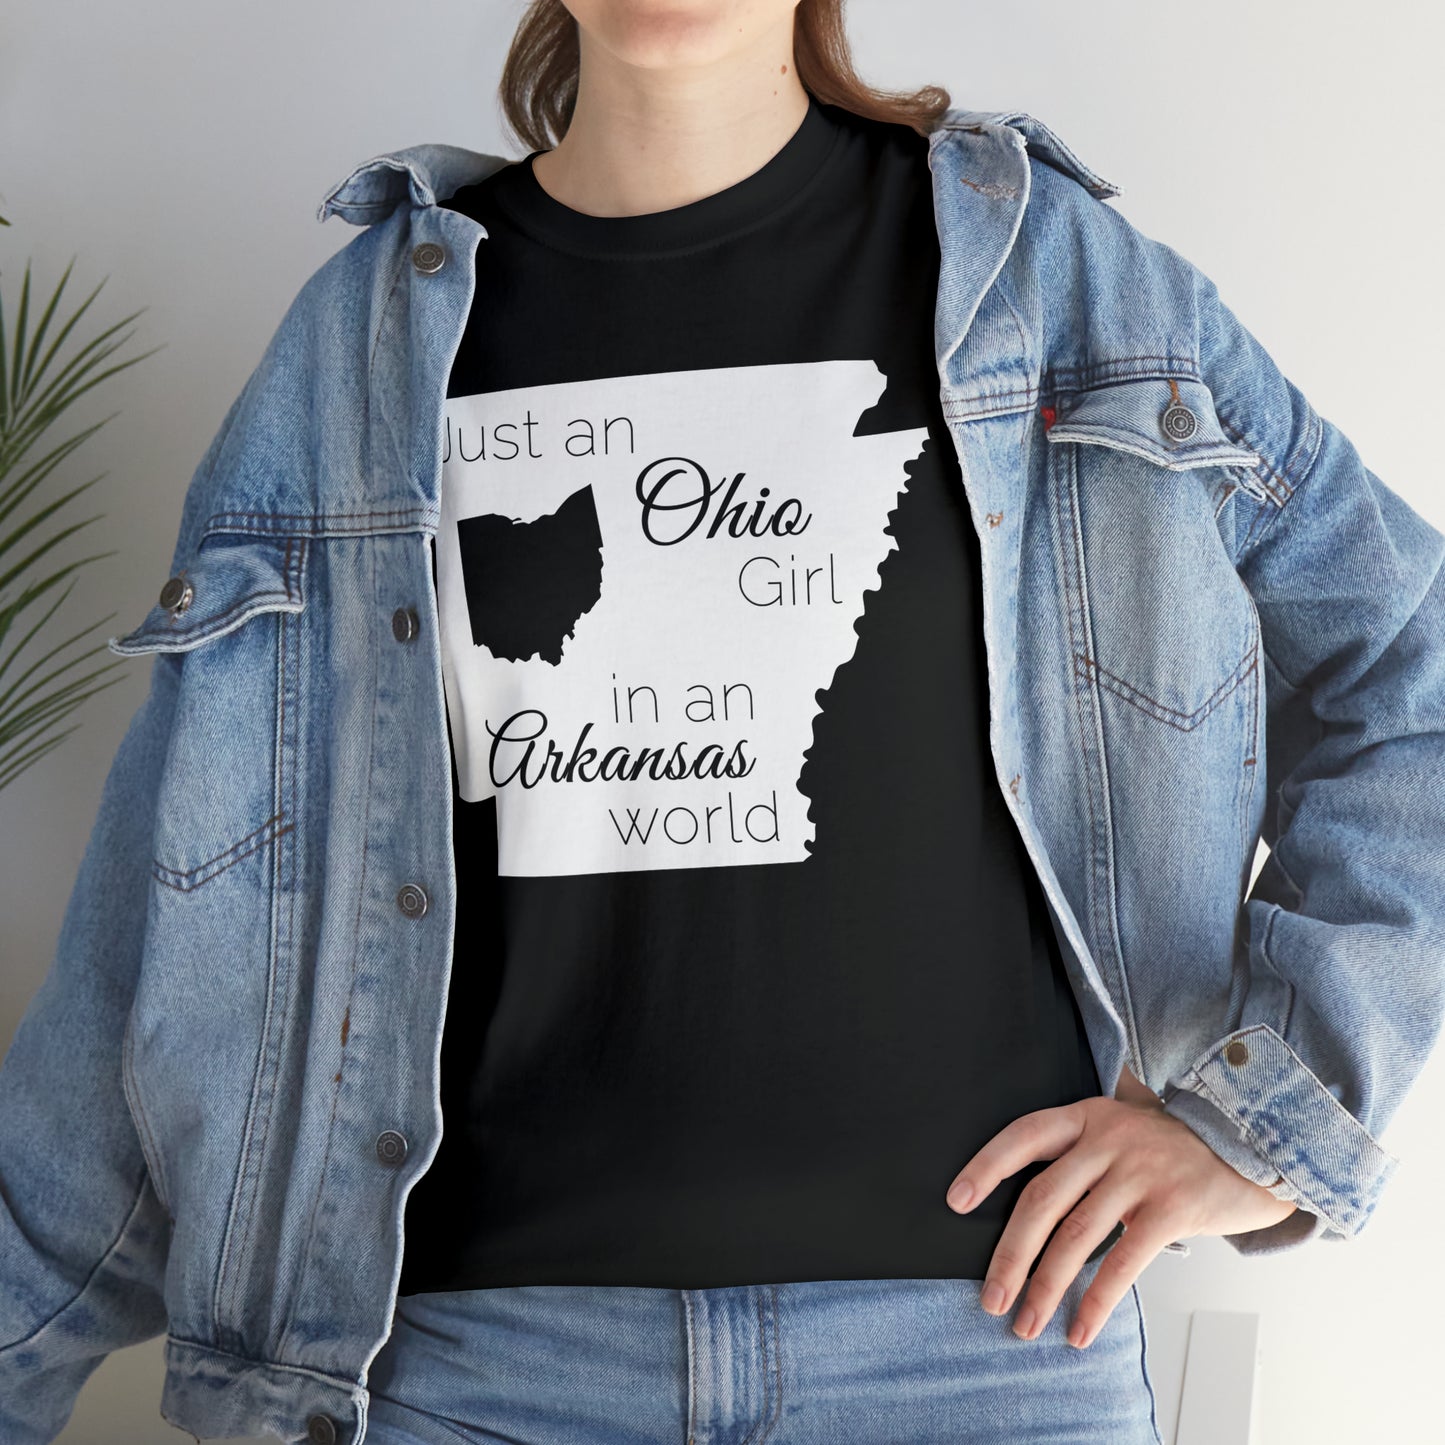 Just an Ohio Girl in an Arkansas World Unisex Heavy Cotton Tee